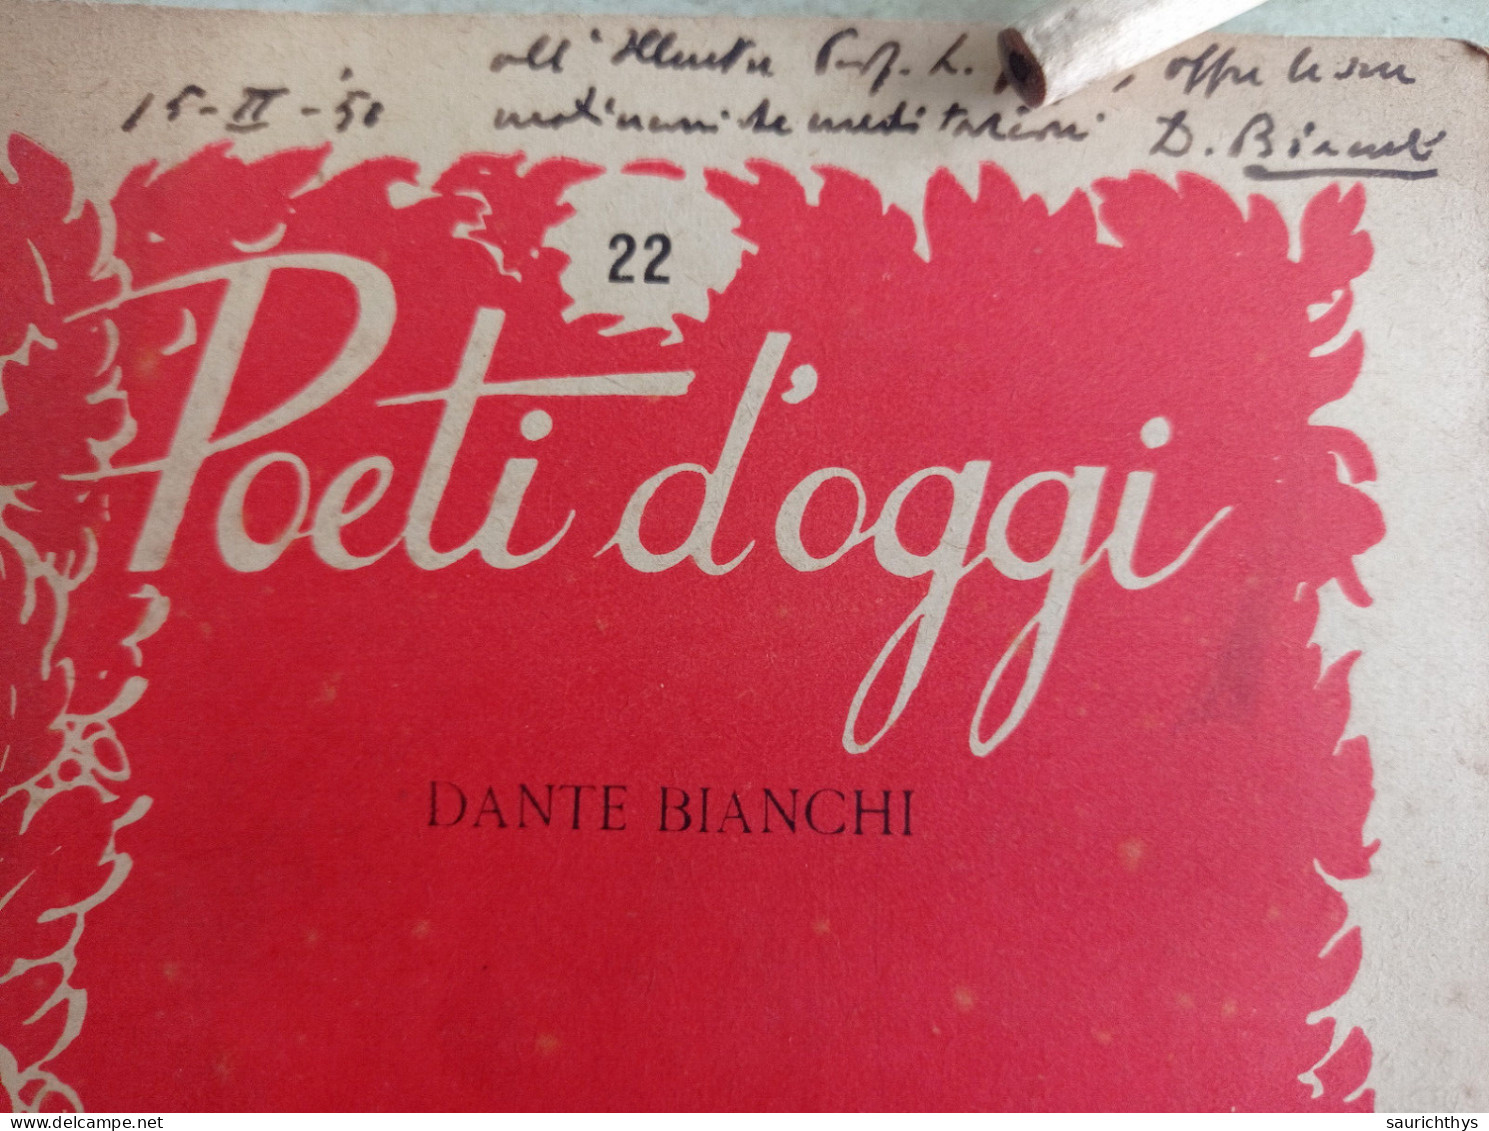 Poeti D'oggi Stralci Gastaldi Editore 1949 Autografo Di Dante Bianchi A Noto Accademico - Poesía